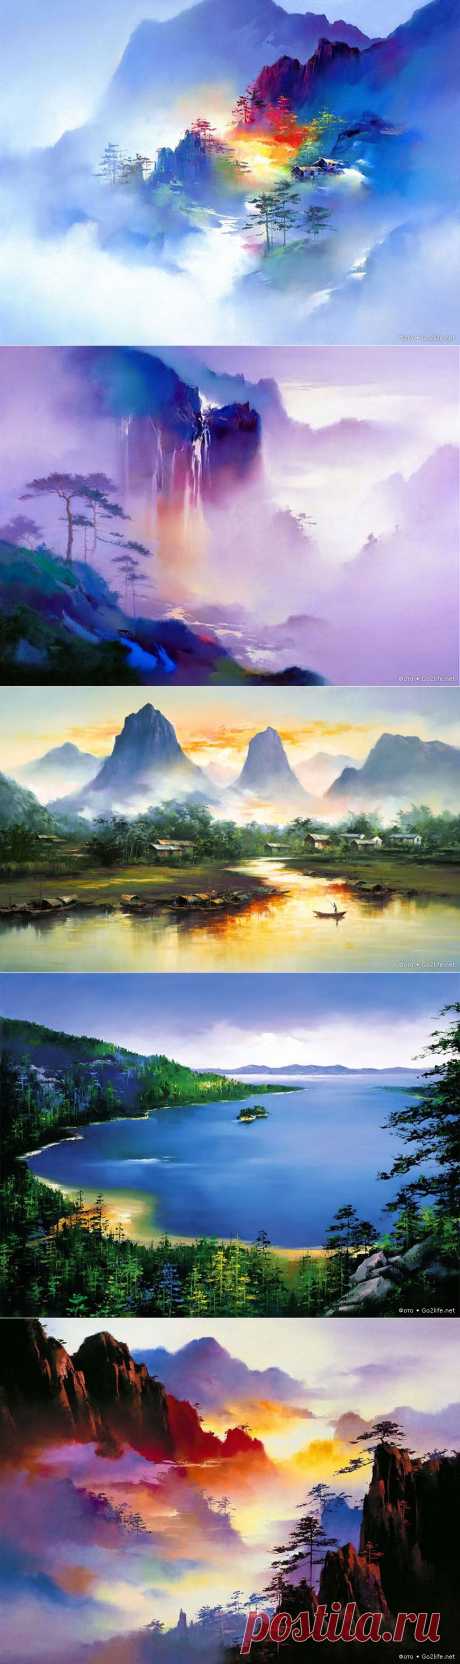 Художник Hong Leung - завораживающие пейзажи Китая » Большие фото: ты увидишь мир